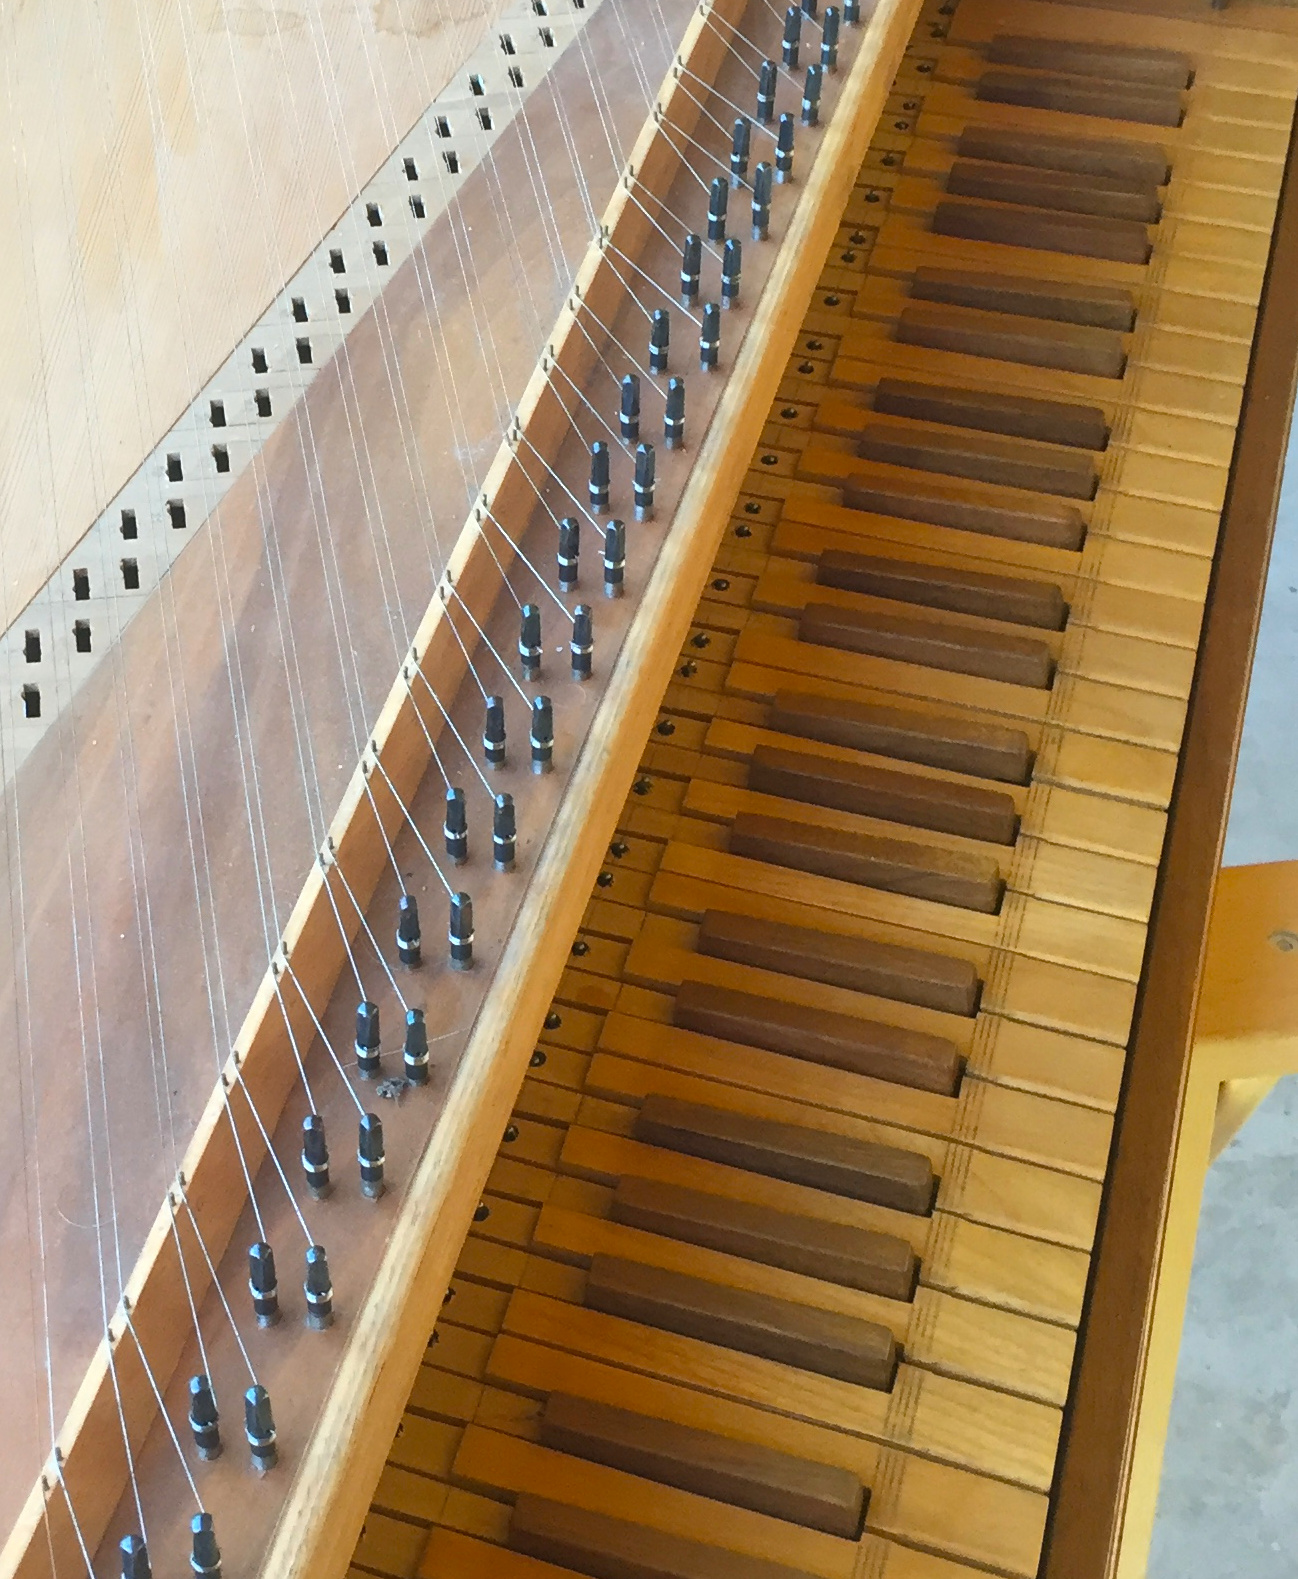 Des sautereaux en plastique, provenant d'un clavecin à 4 jeux, en attente de restauration